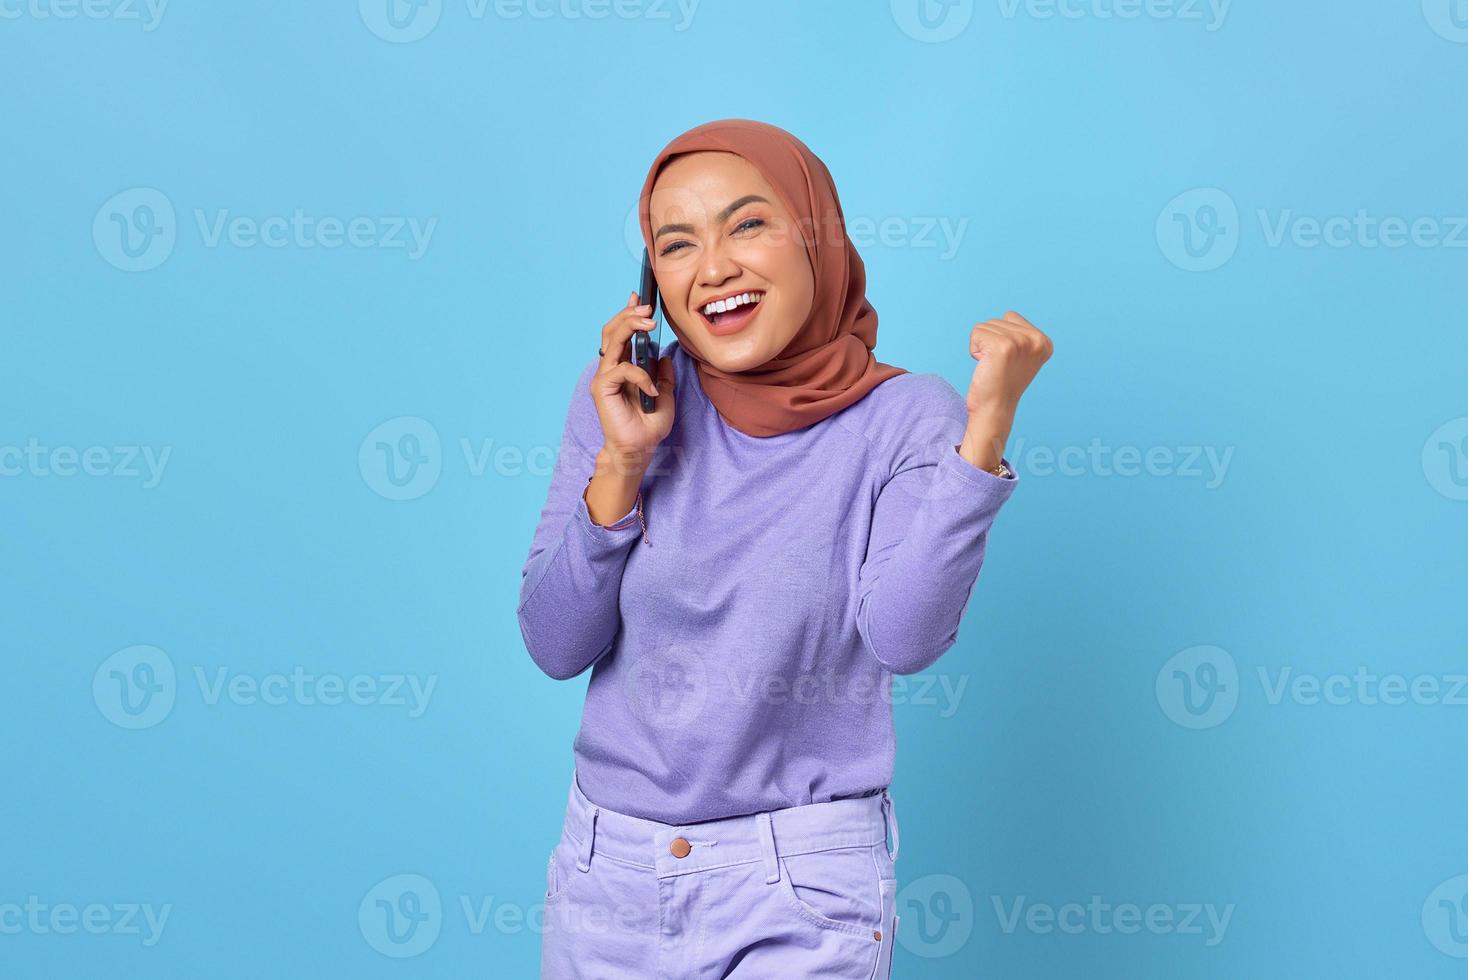 vrolijke jonge aziatische vrouw die op mobiele telefoon praat terwijl ze de overwinning viert op blauwe achtergrond foto